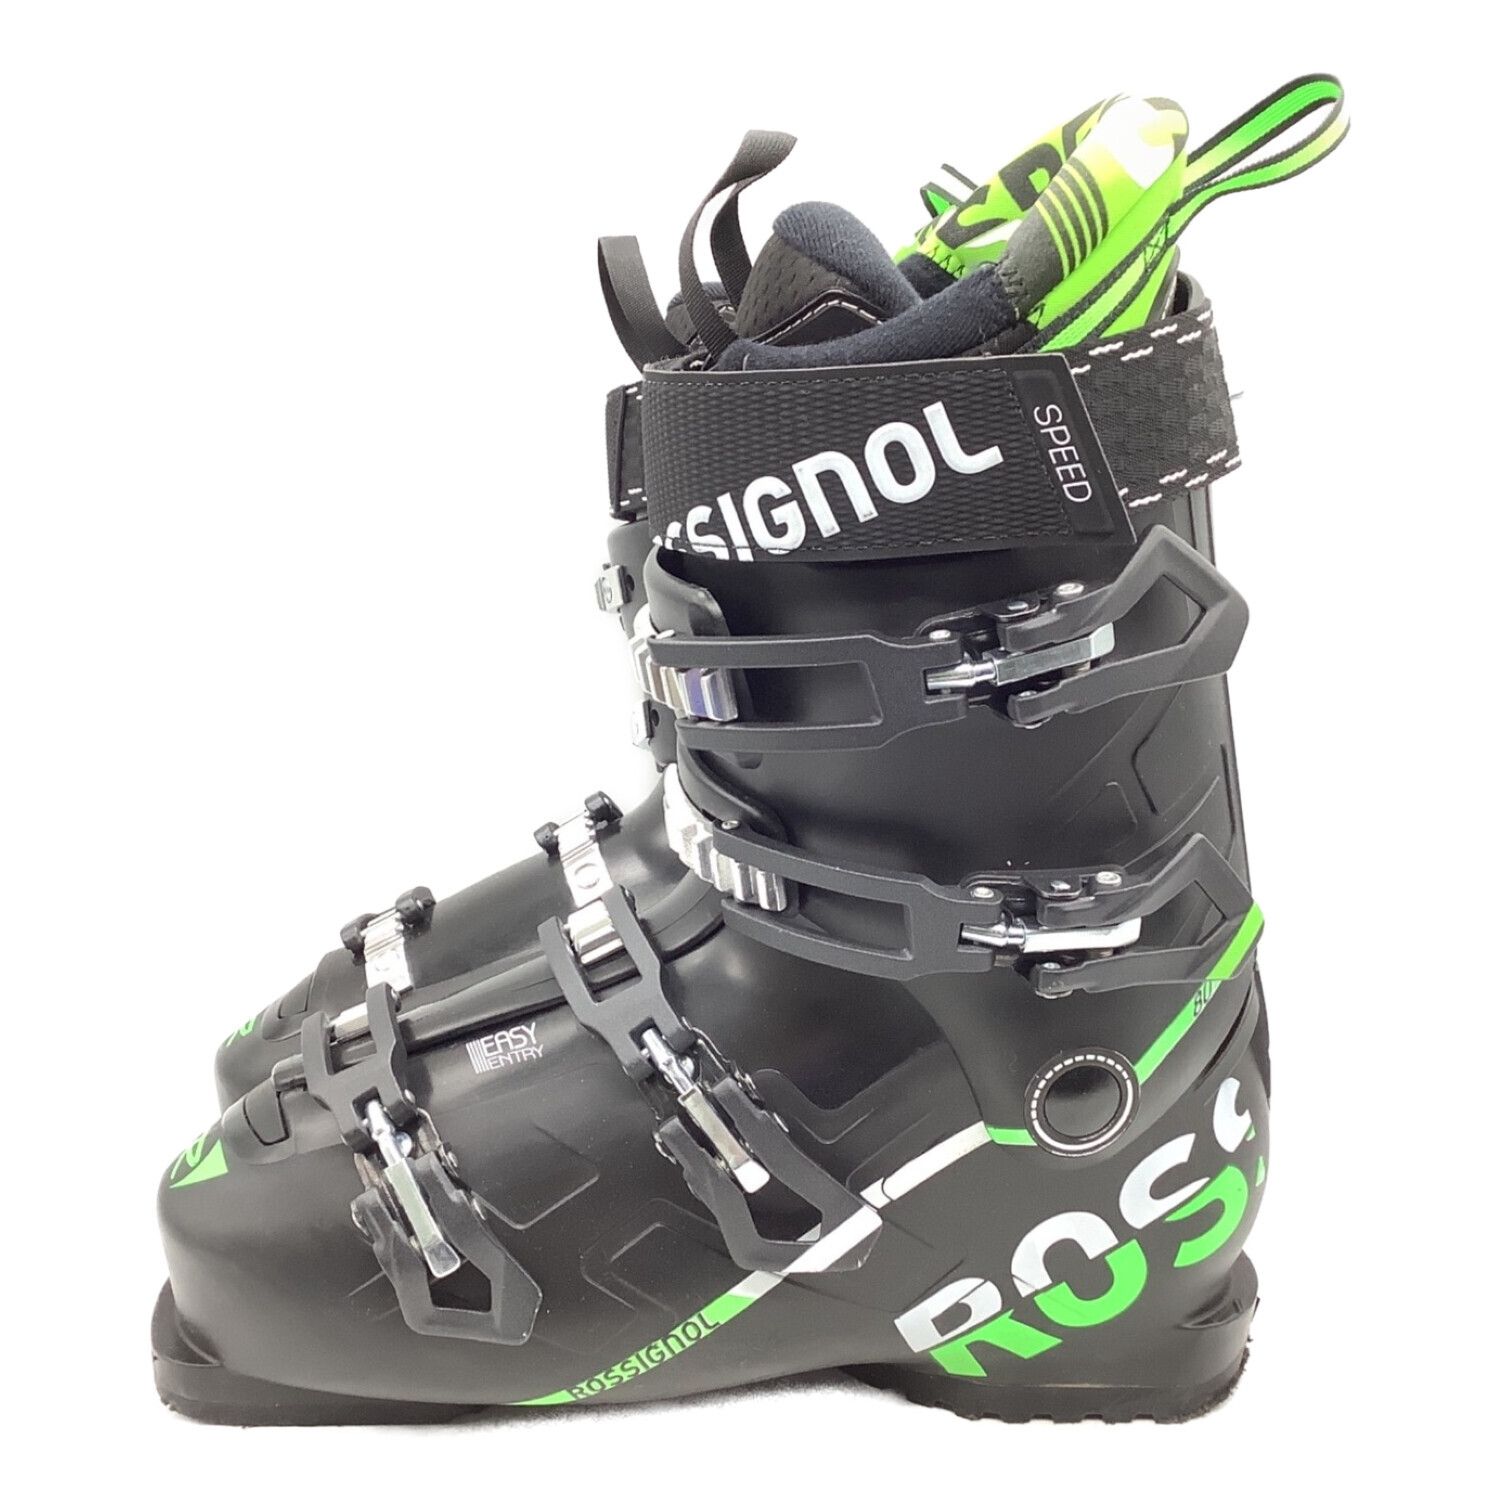 ROSSIGNOL (ロシニョール) スキーブーツ メンズ 26-26.5cm 